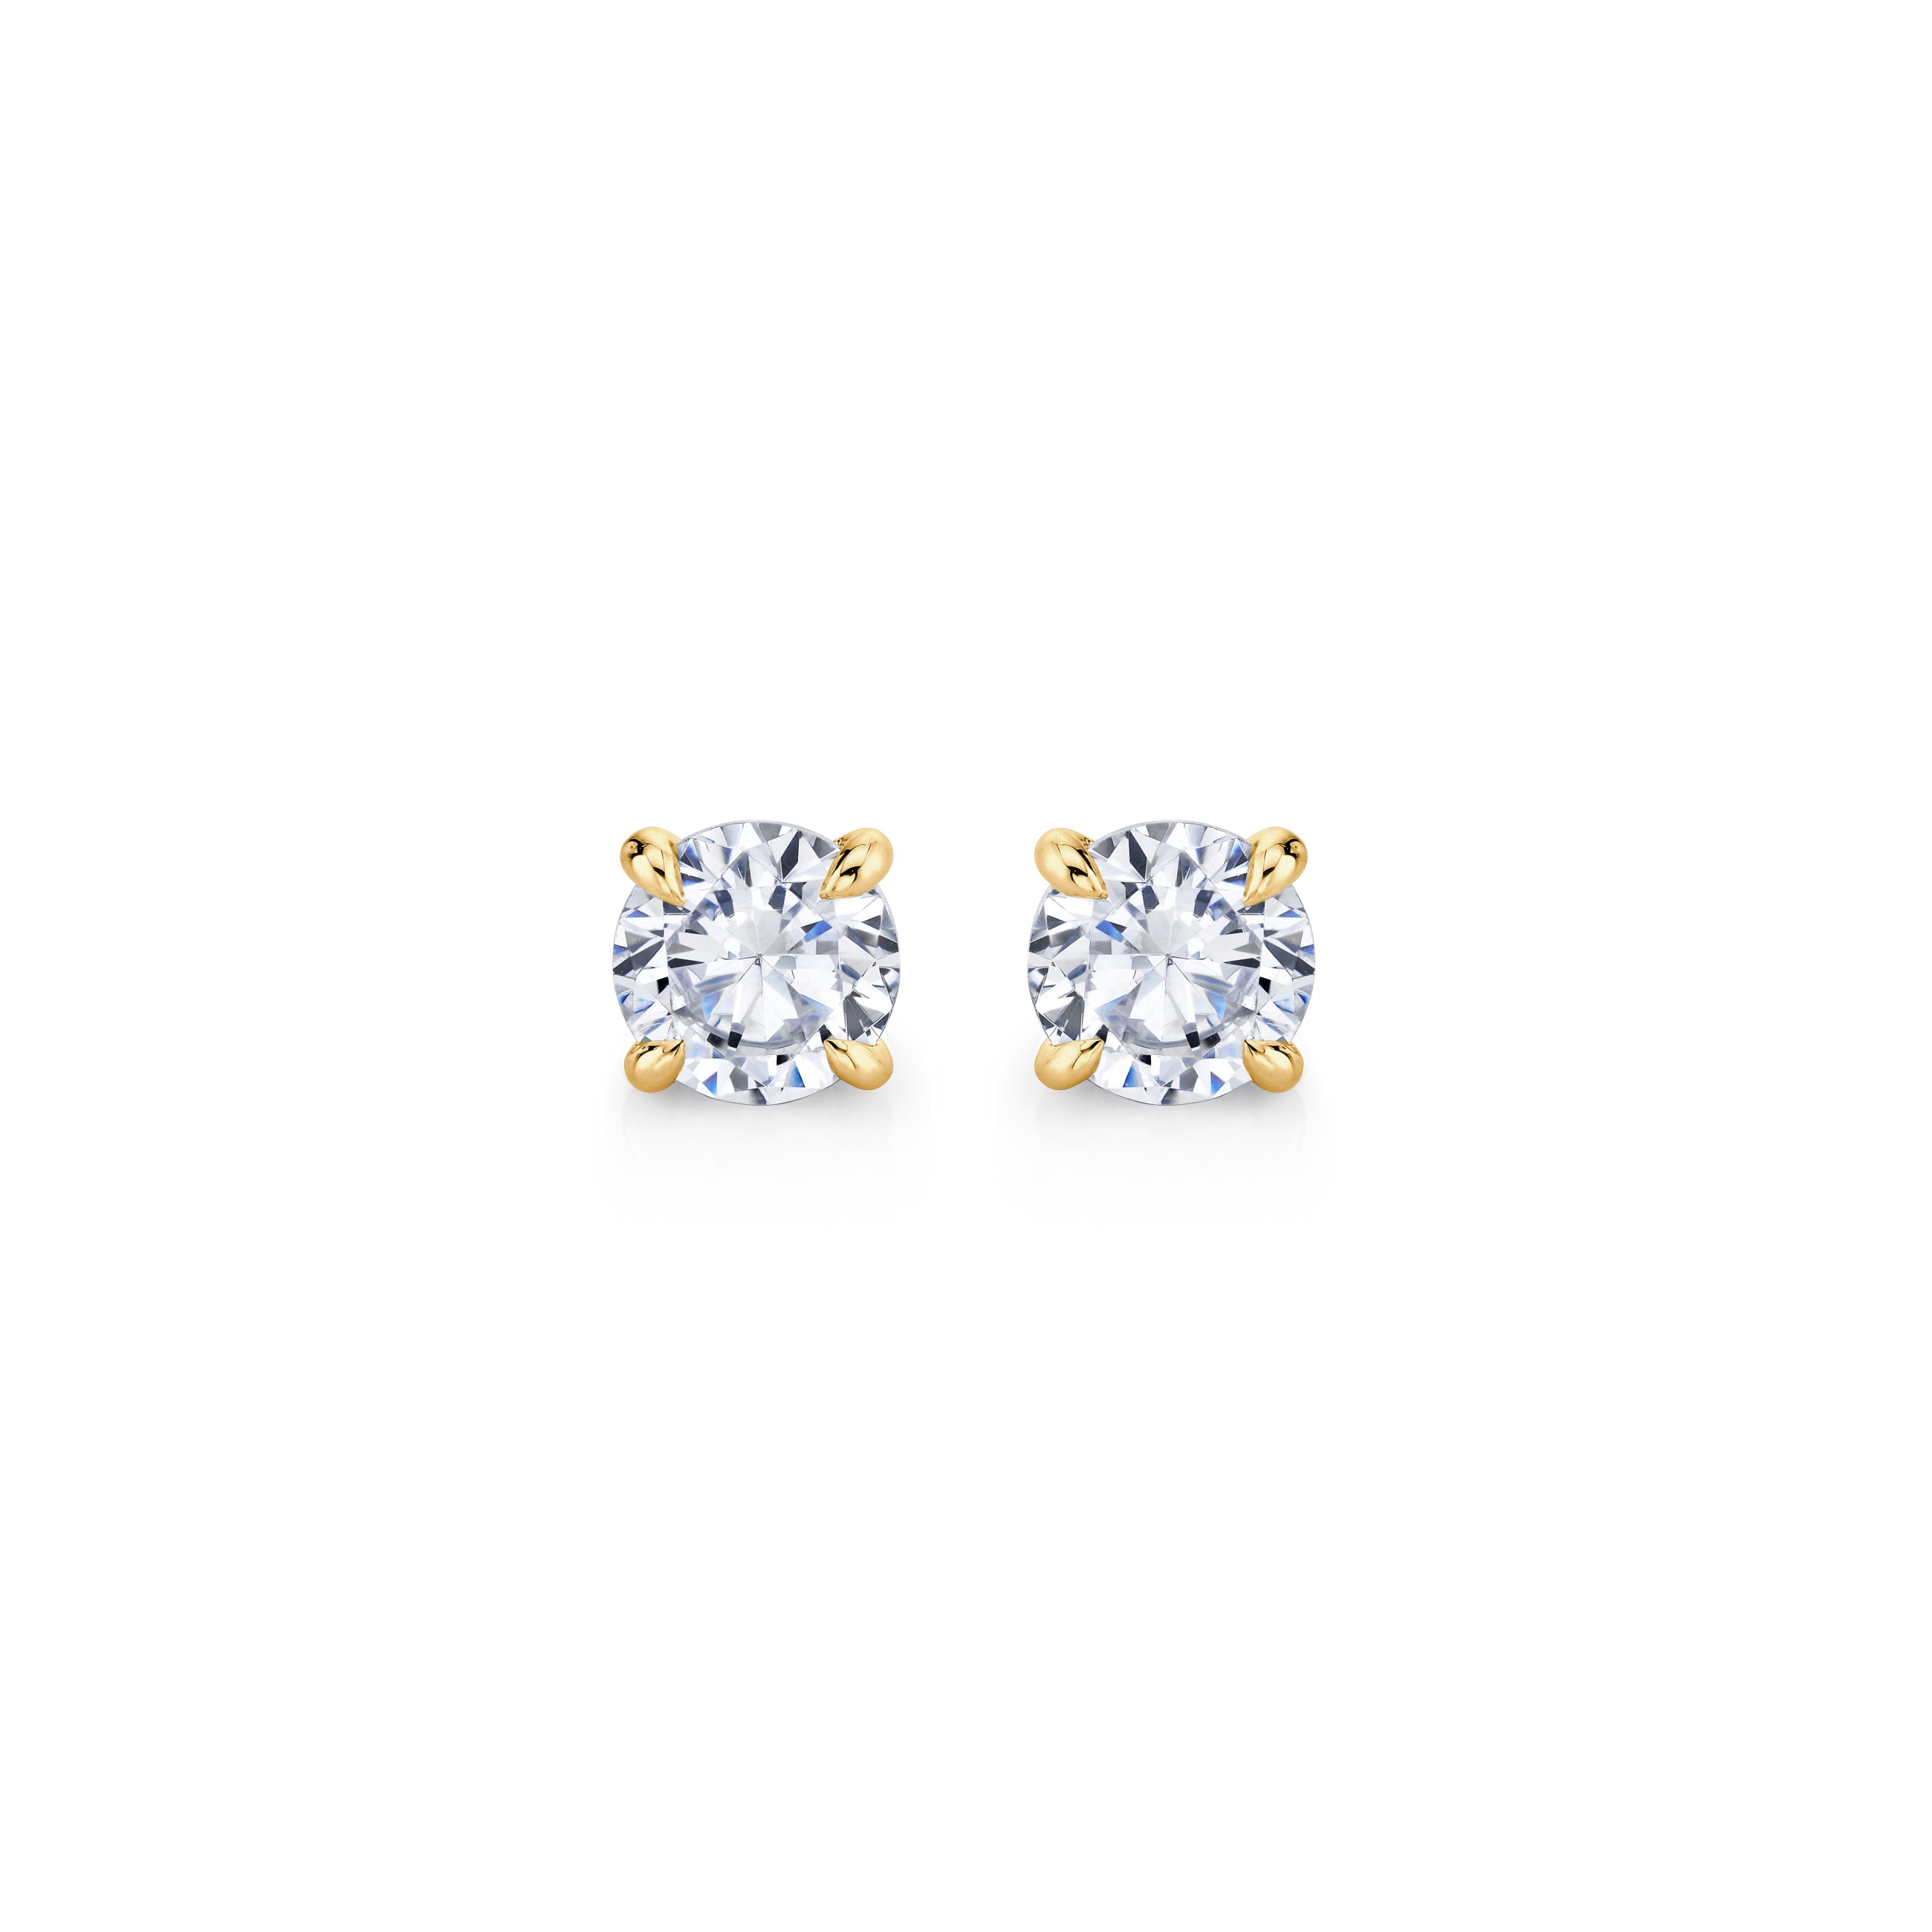 Goldeluxe Jewelry — Stone Spot Stud Earrings